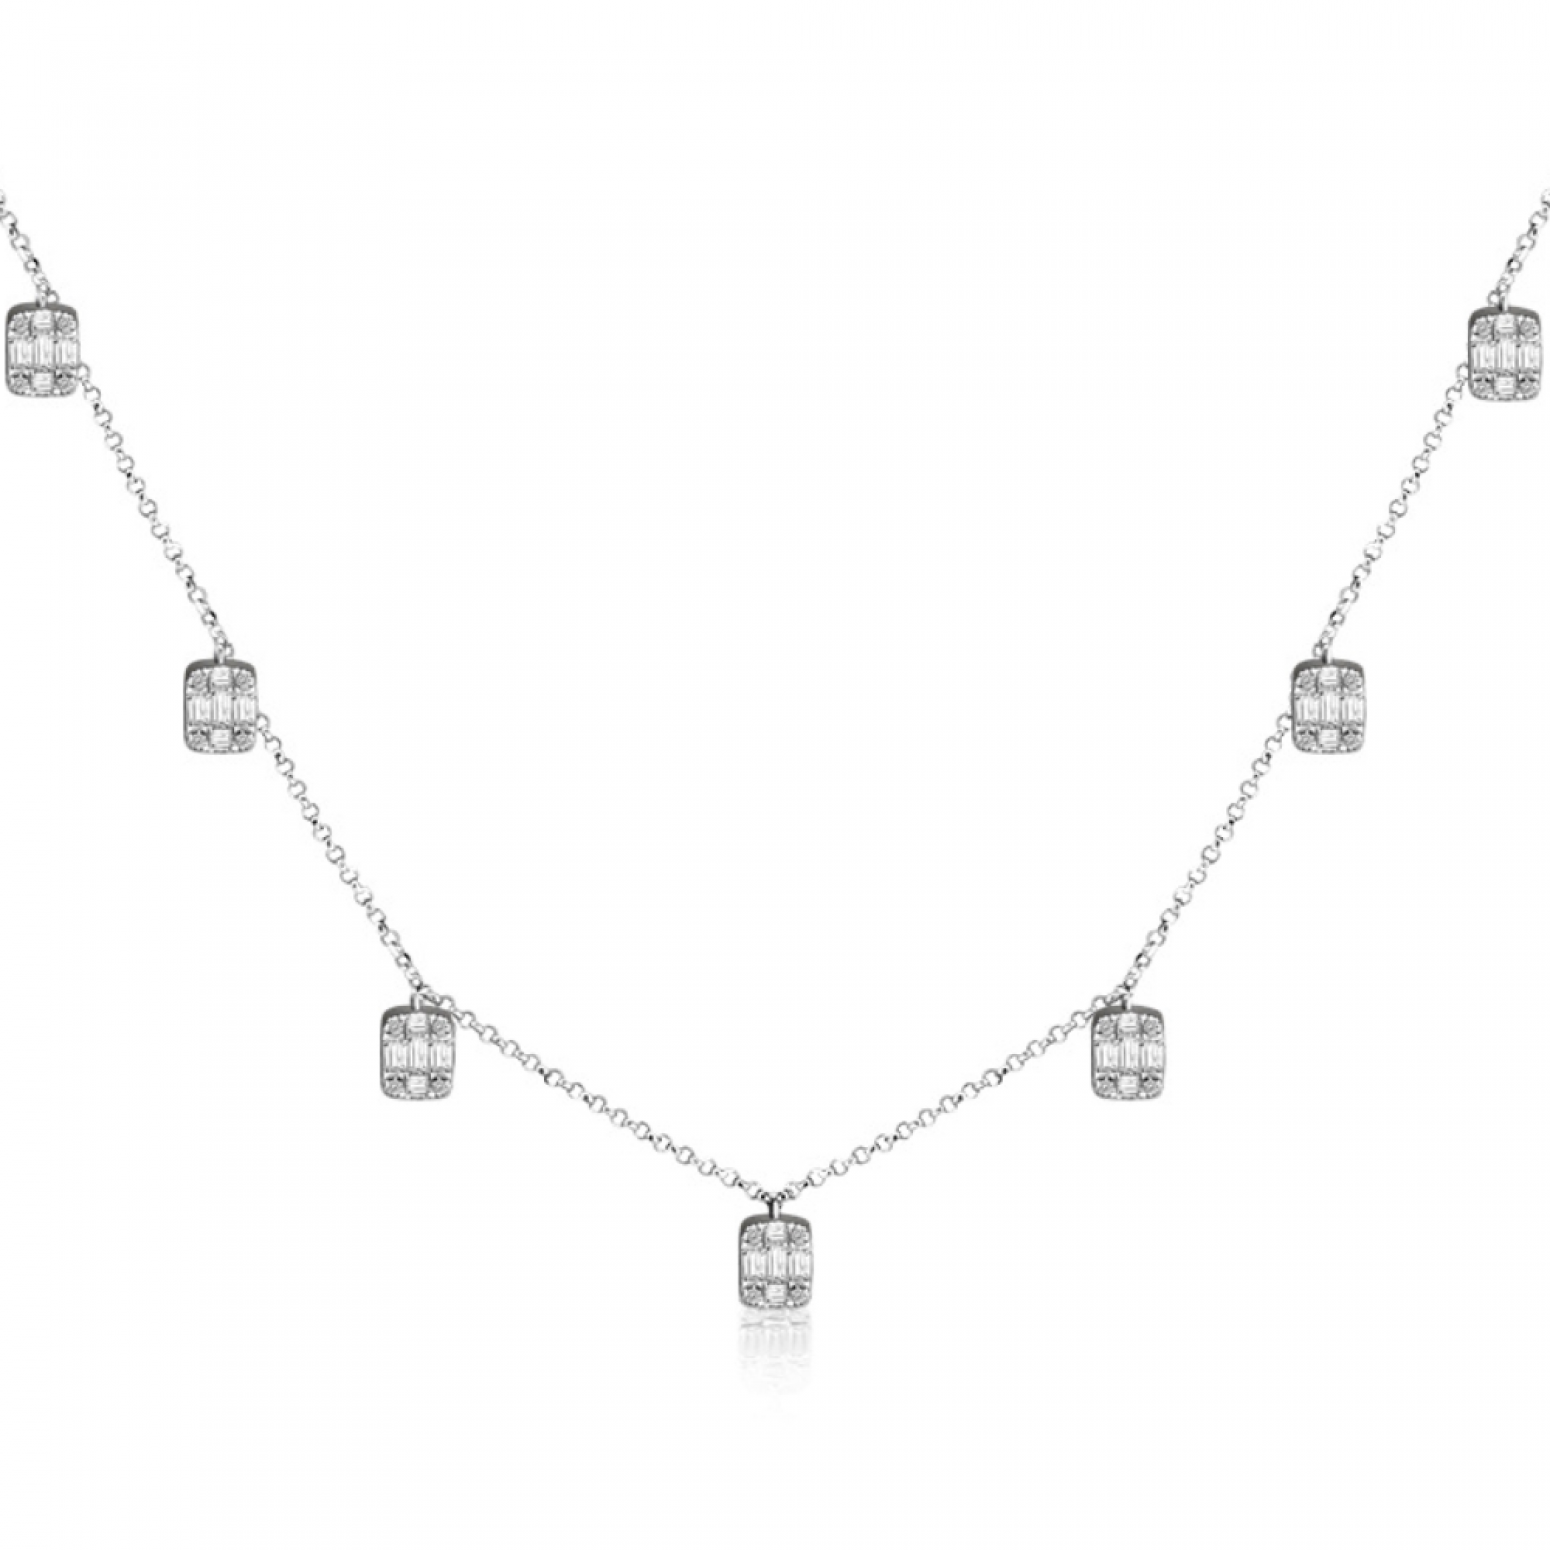 Κολιέ, Κ18 λευκόχρυσο με διαμάντια 0.53ct, SI1, G, ko5861 ΚΟΛΙΕ Κοσμηματα - chrilia.gr